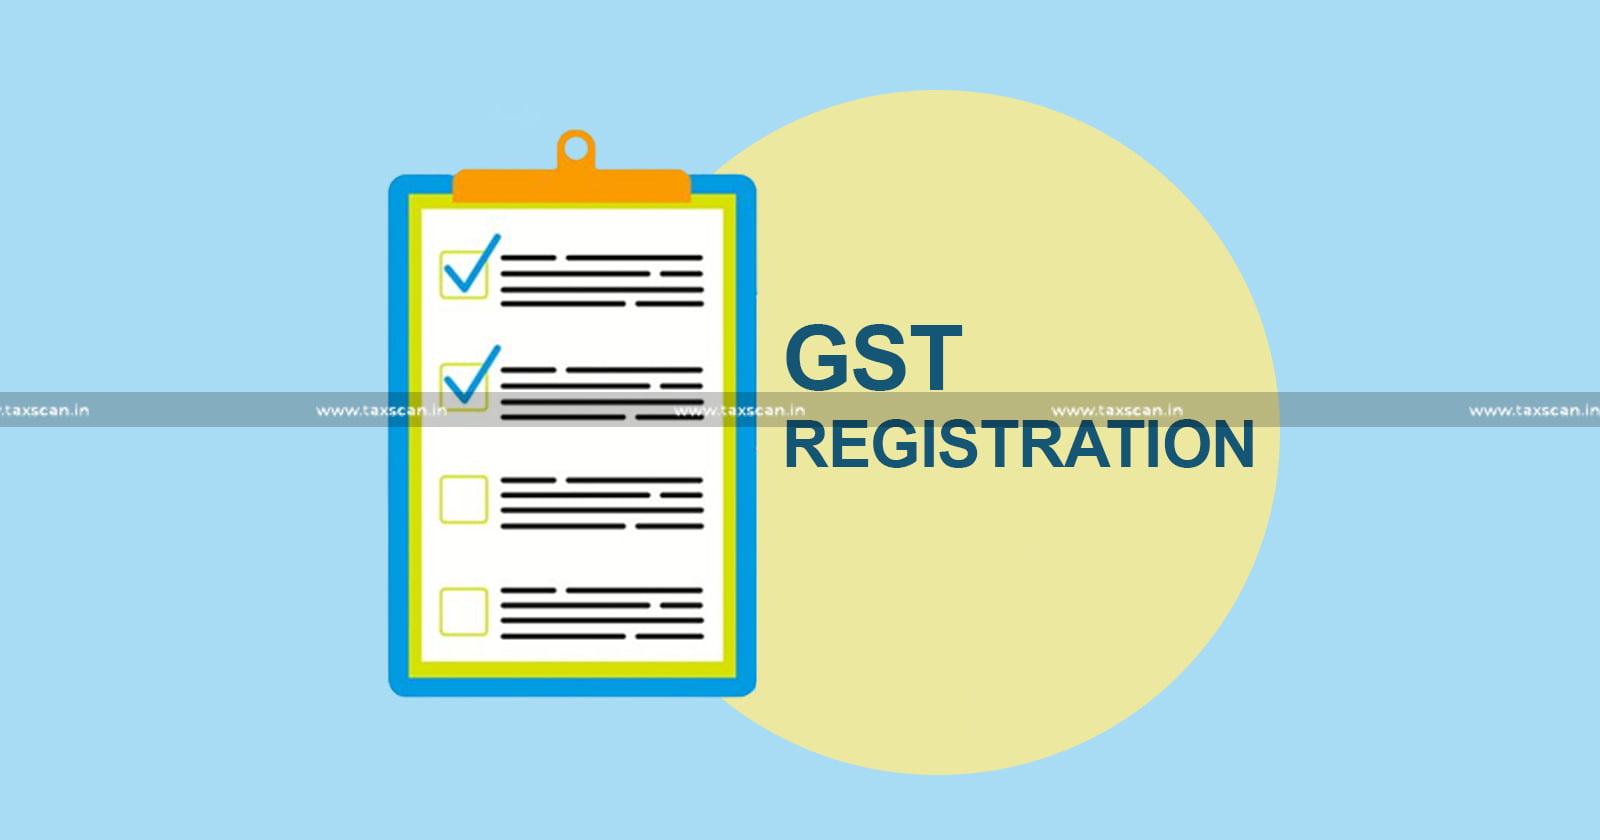 Delhi High Court - GST registration - GST - GST Registration cancellation - Taxpayer GST registration - taxscan